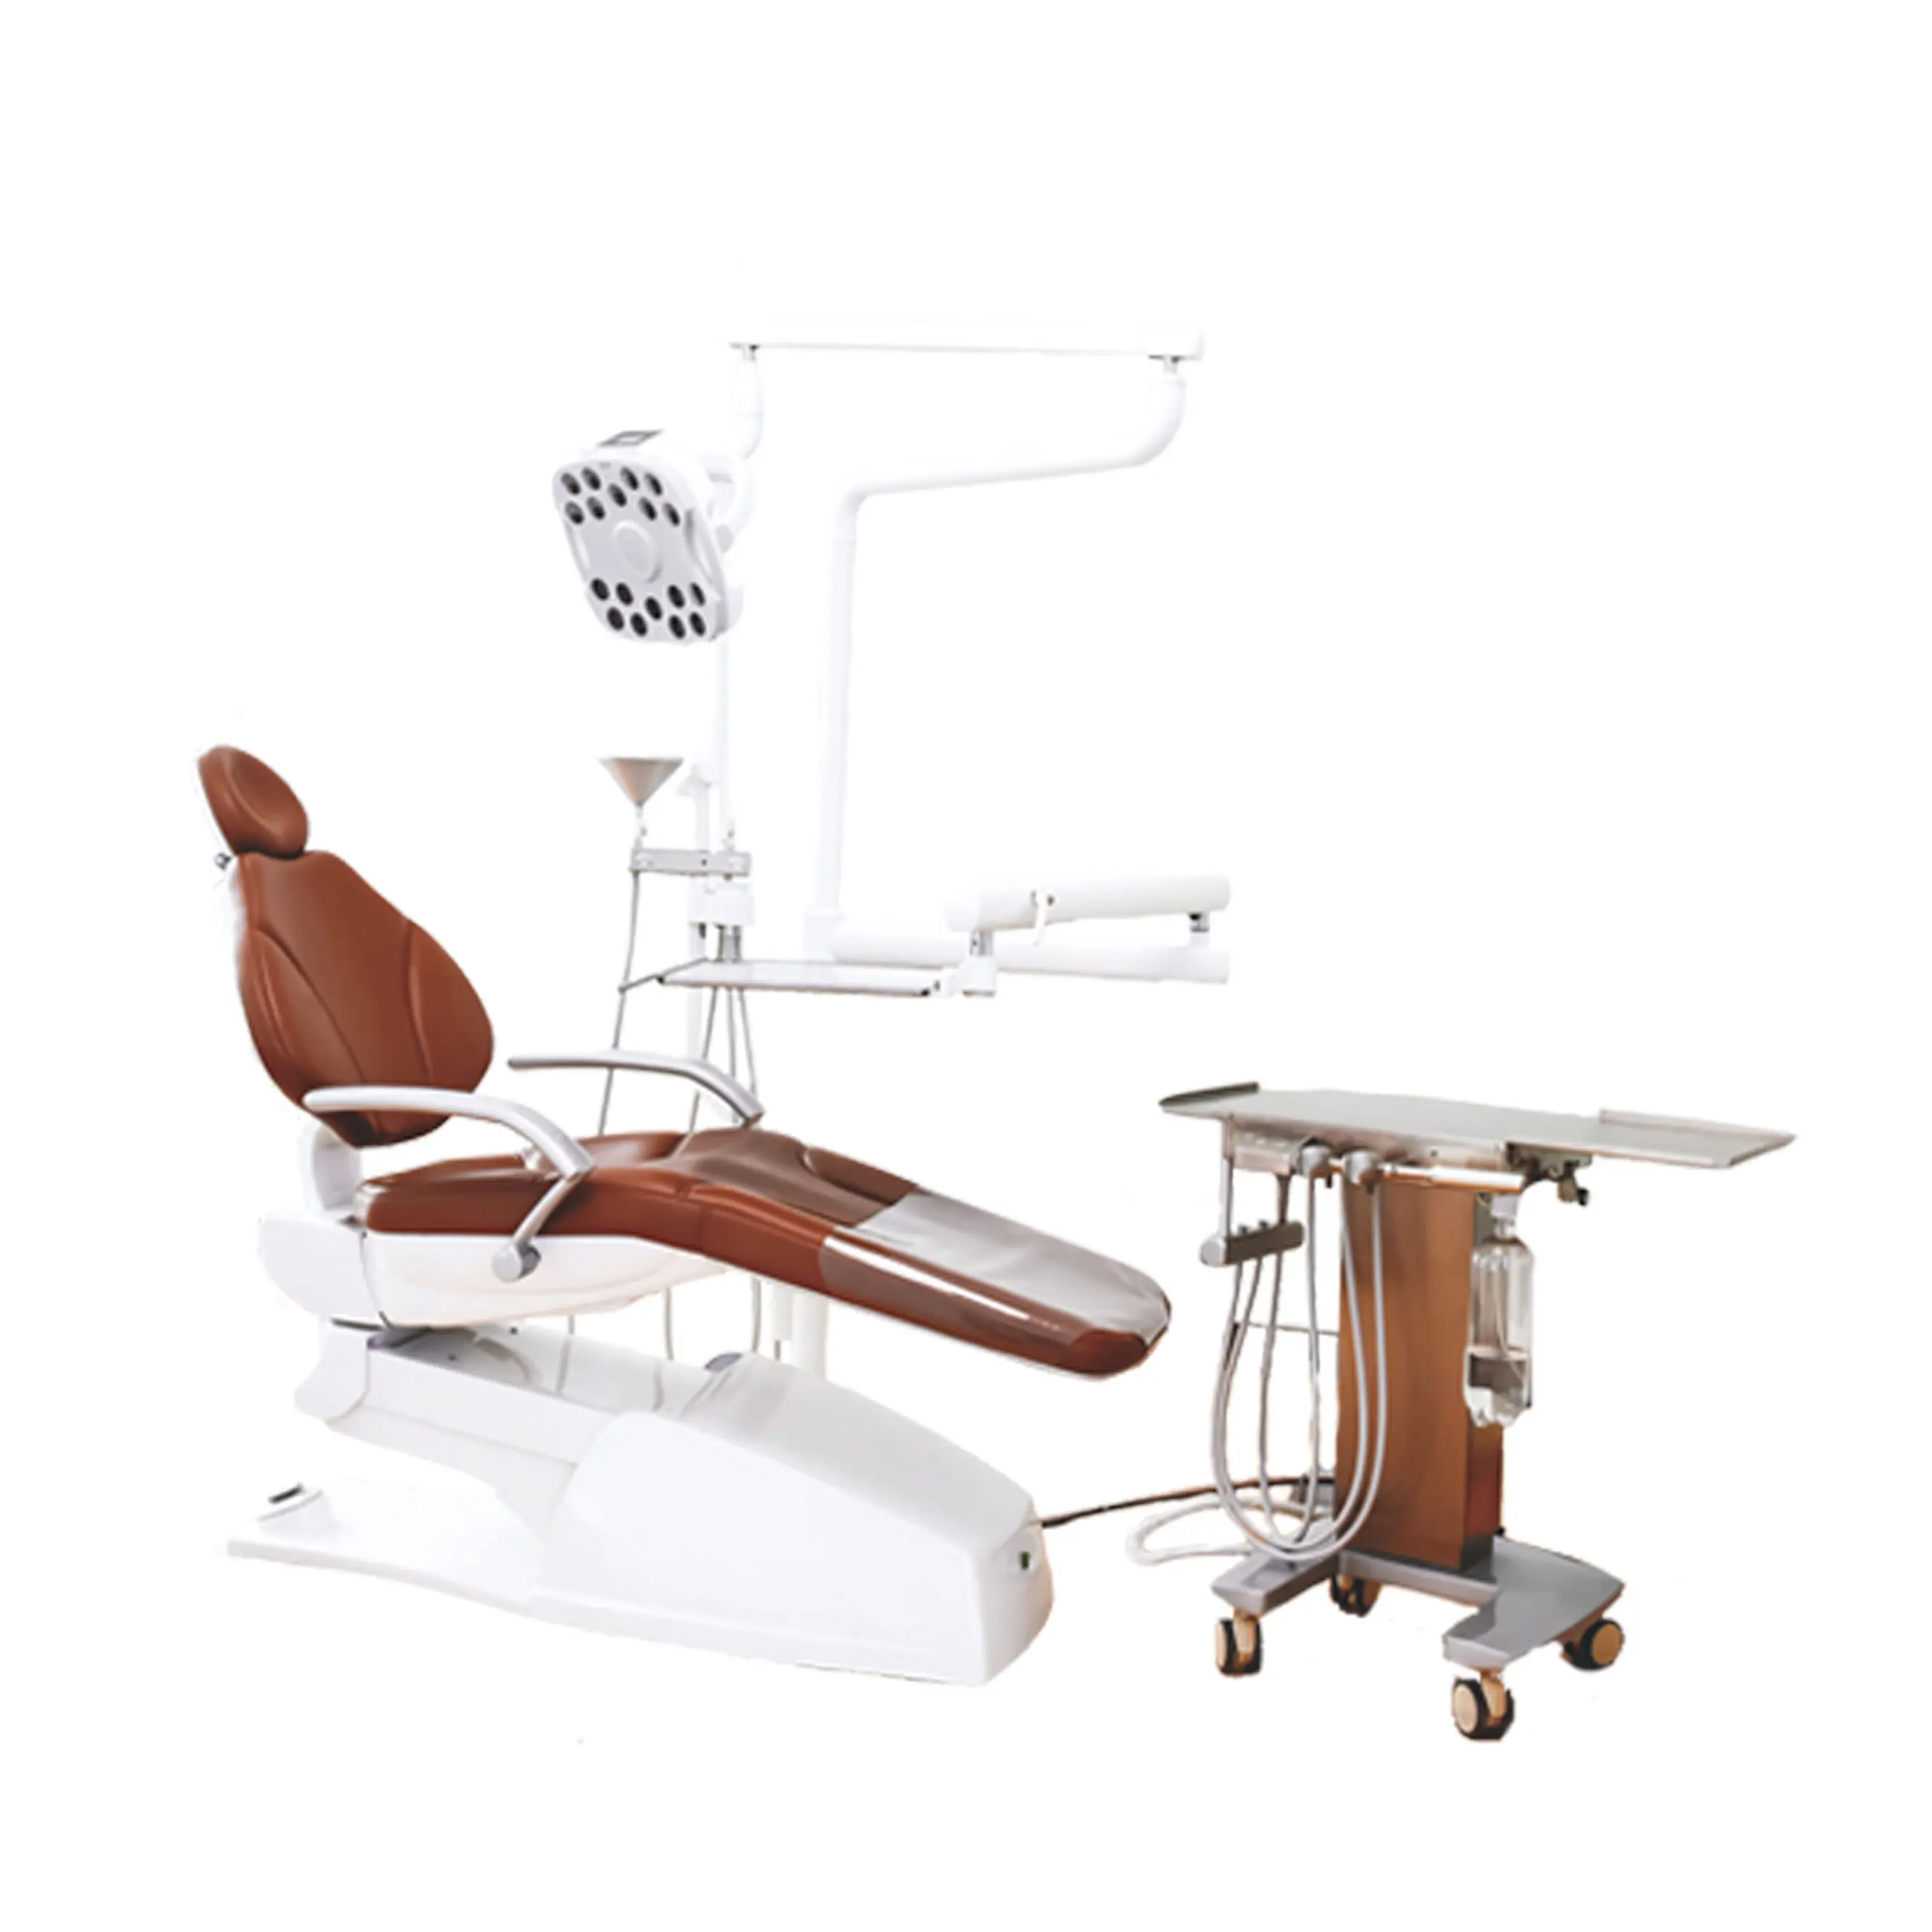 Unidad de silla dental de seguridad avanzada, sillas dentales de alta calidad, lista de precios, fundas para sillas dentales, uso hospitalario desechable